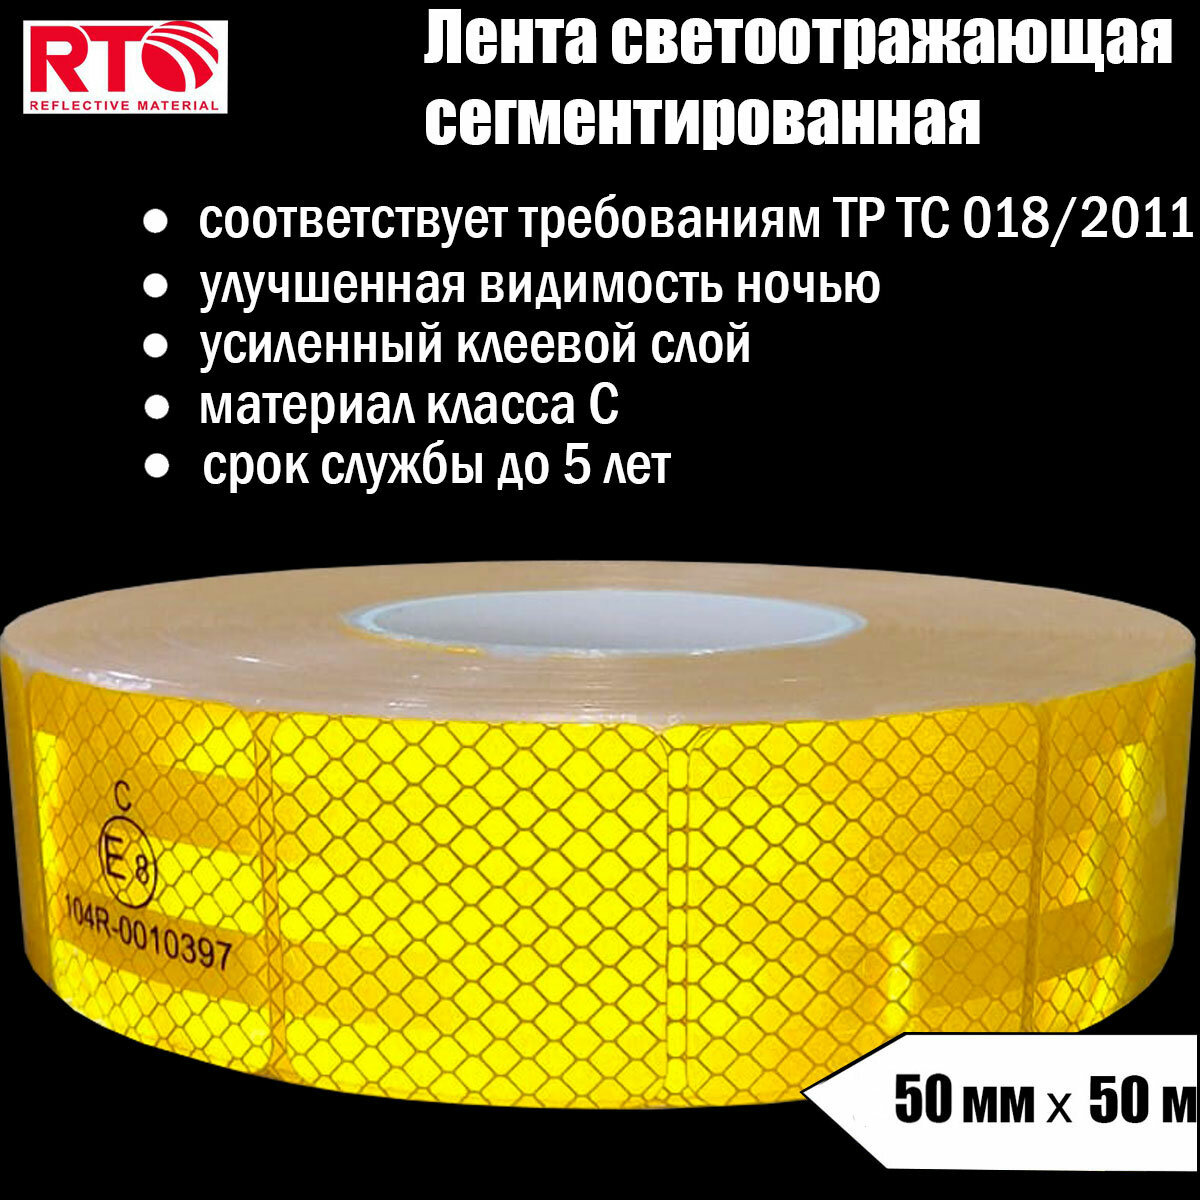 Лента светоотражающая сегментированная RTLITE RT-V104 для контурной маркировки 50мм х 50м, жёлтая